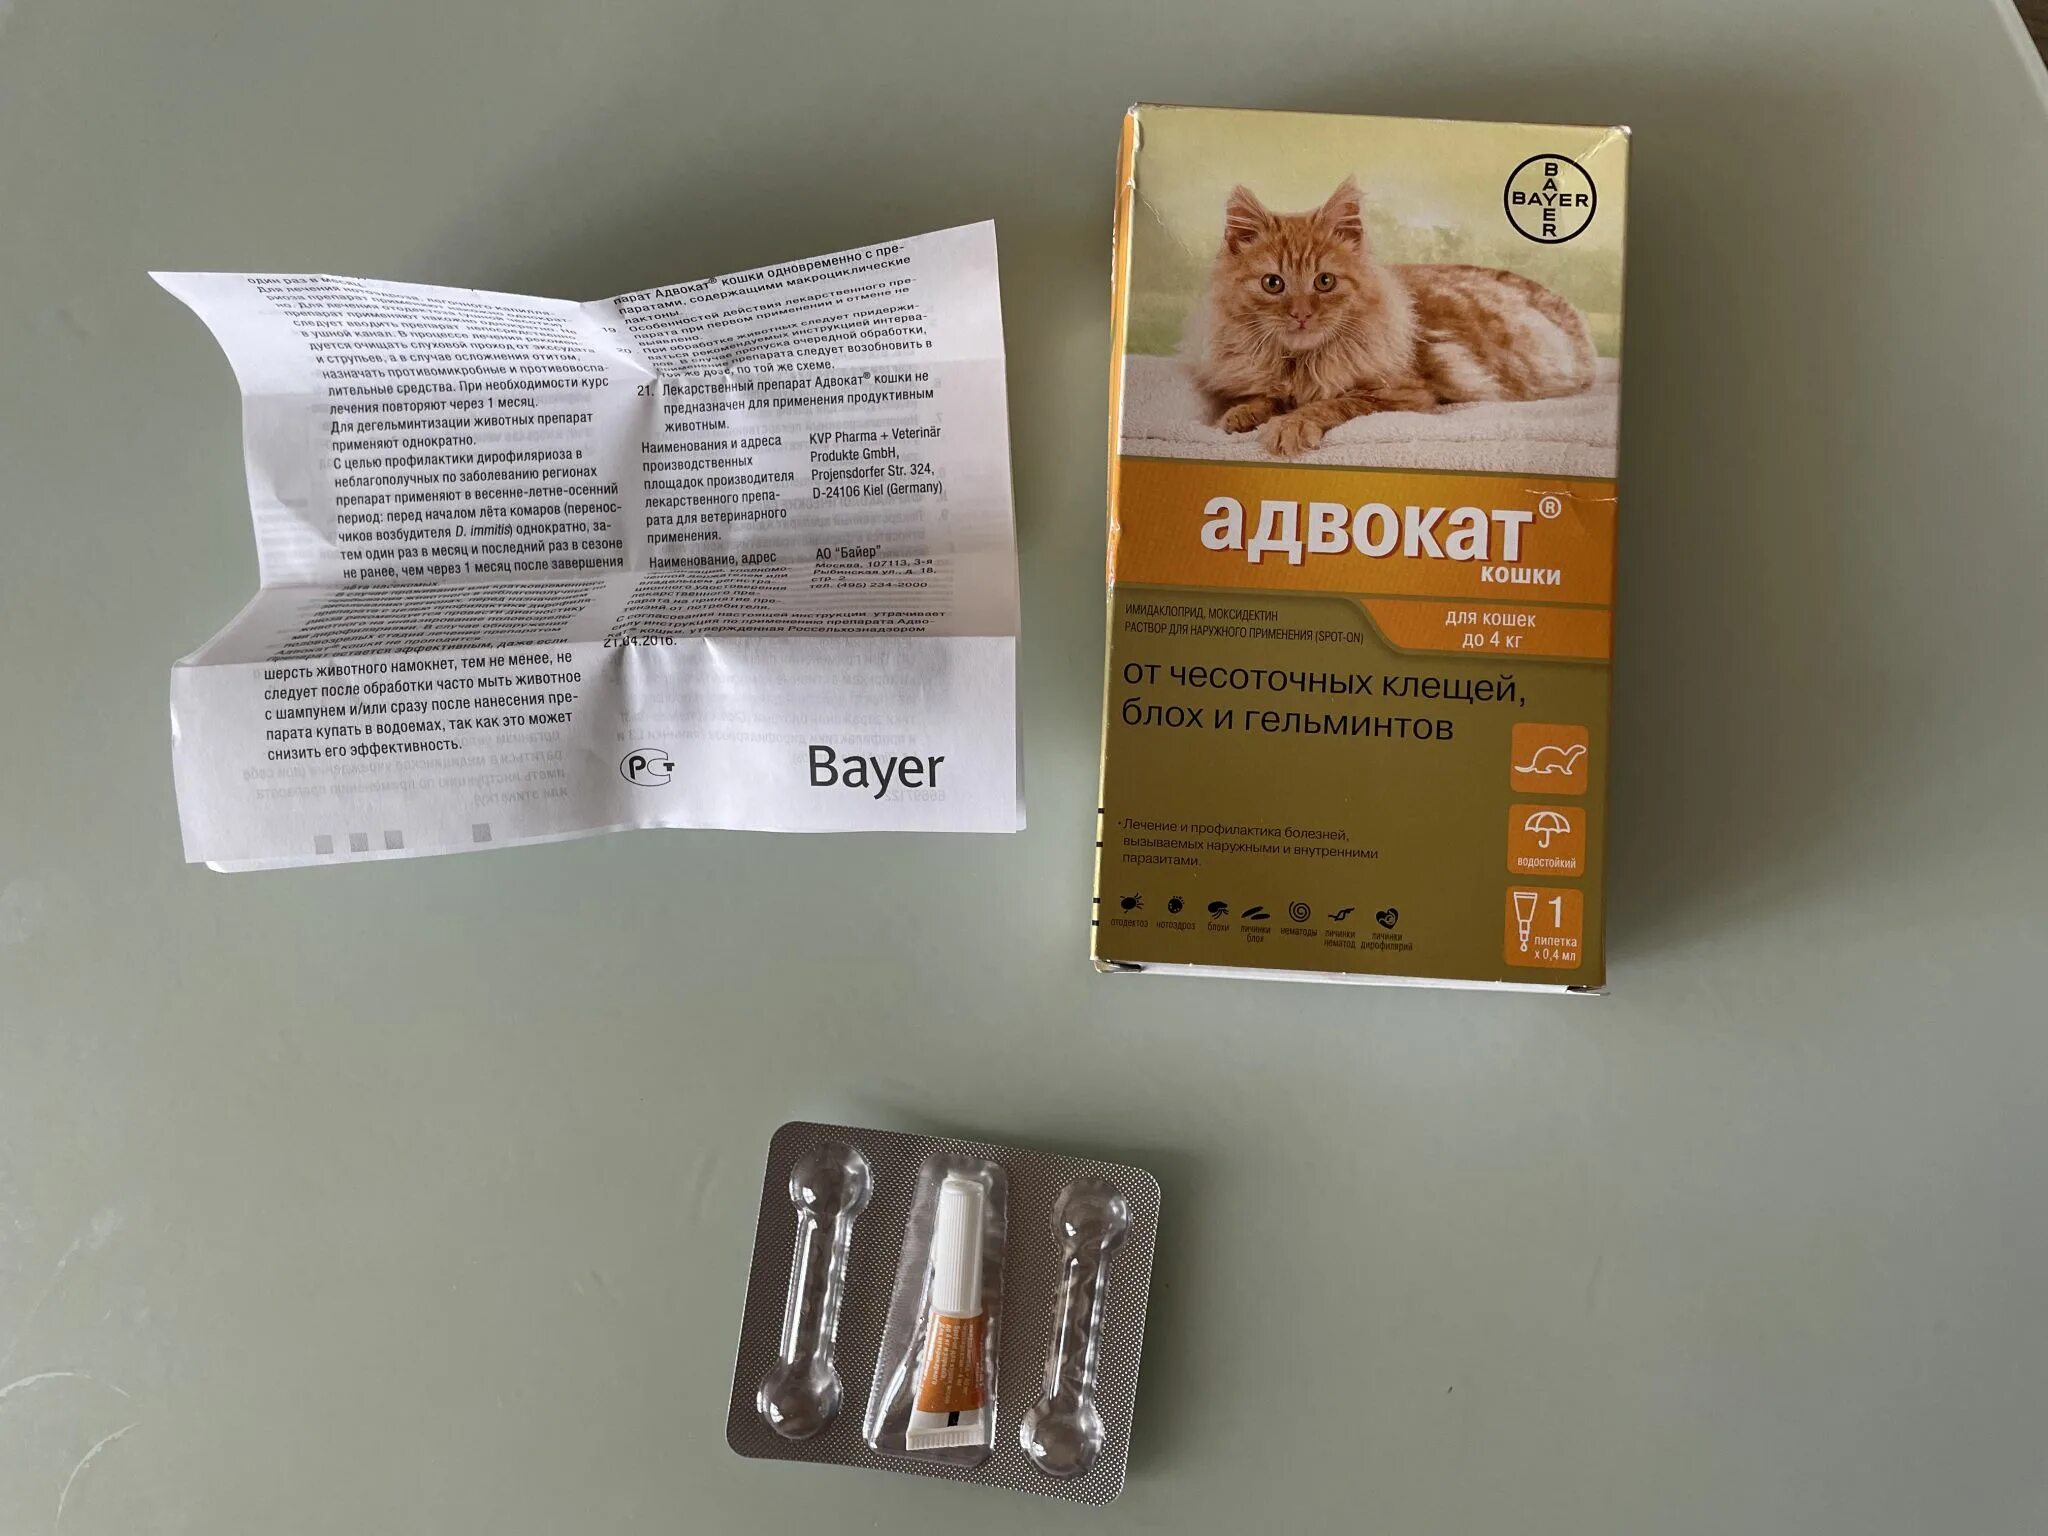 Адвокат кошки до 4. Bayer адвокат для кошек до 4 кг (3 пипетки х 0,4 мл). Bayer адвокат капли для кошек до 4 кг 1 пипетка. Адвокат Байер для кошек. Адвокат (Bayer) капли от чесоточных клещей, блох и гельминтов для кошек более 4 кг (3 пипетки).